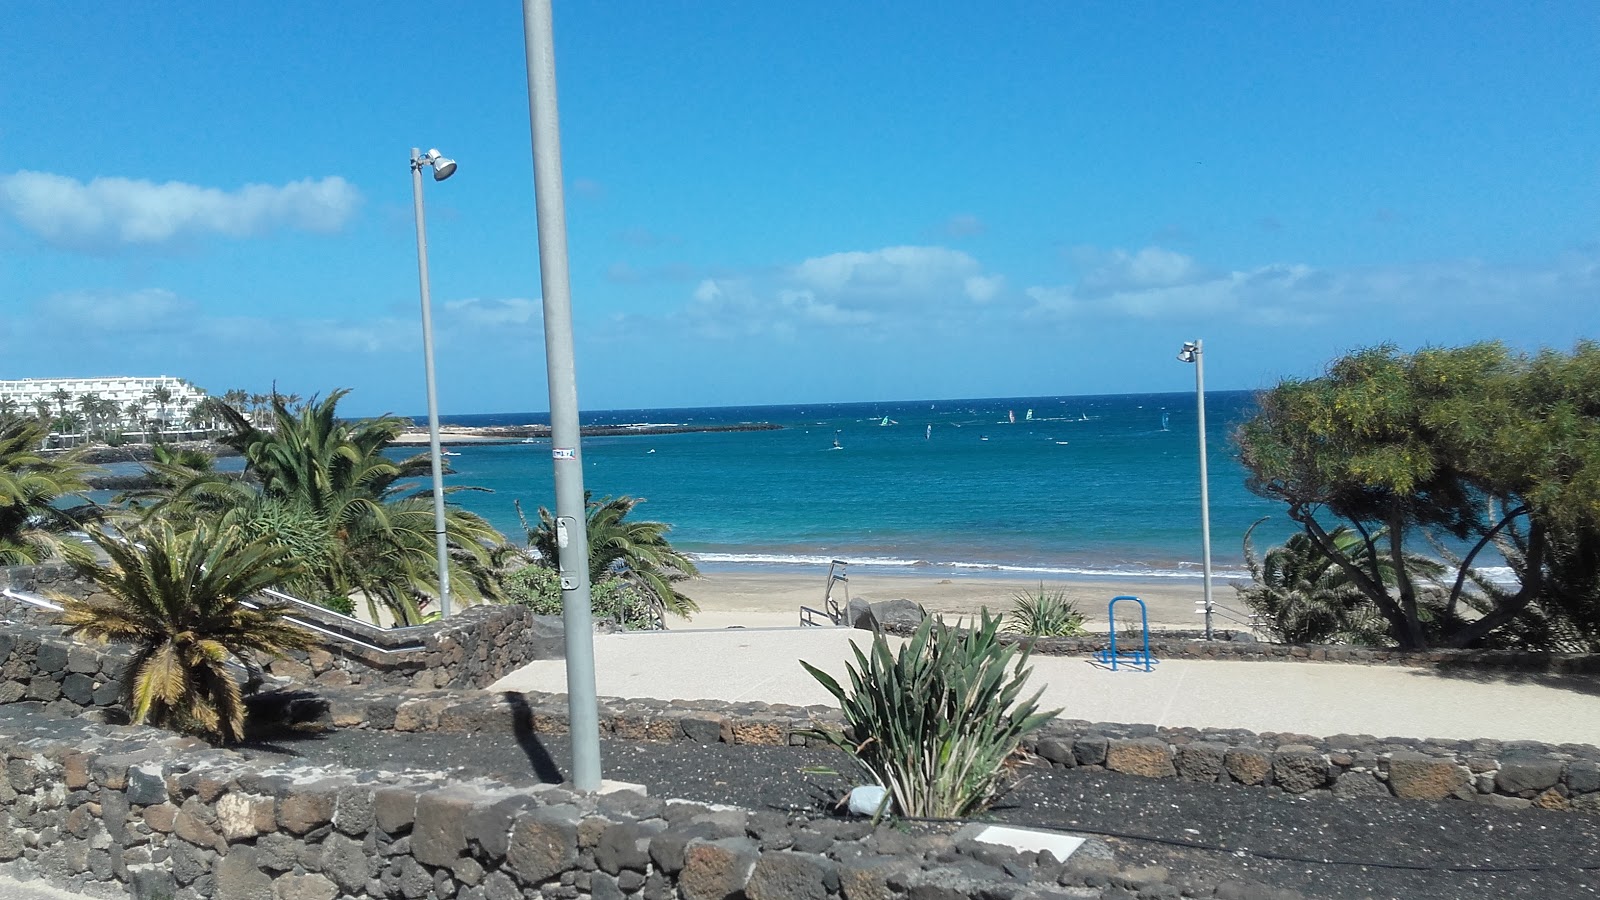 Photo of Playa de las Cucharas amenities area